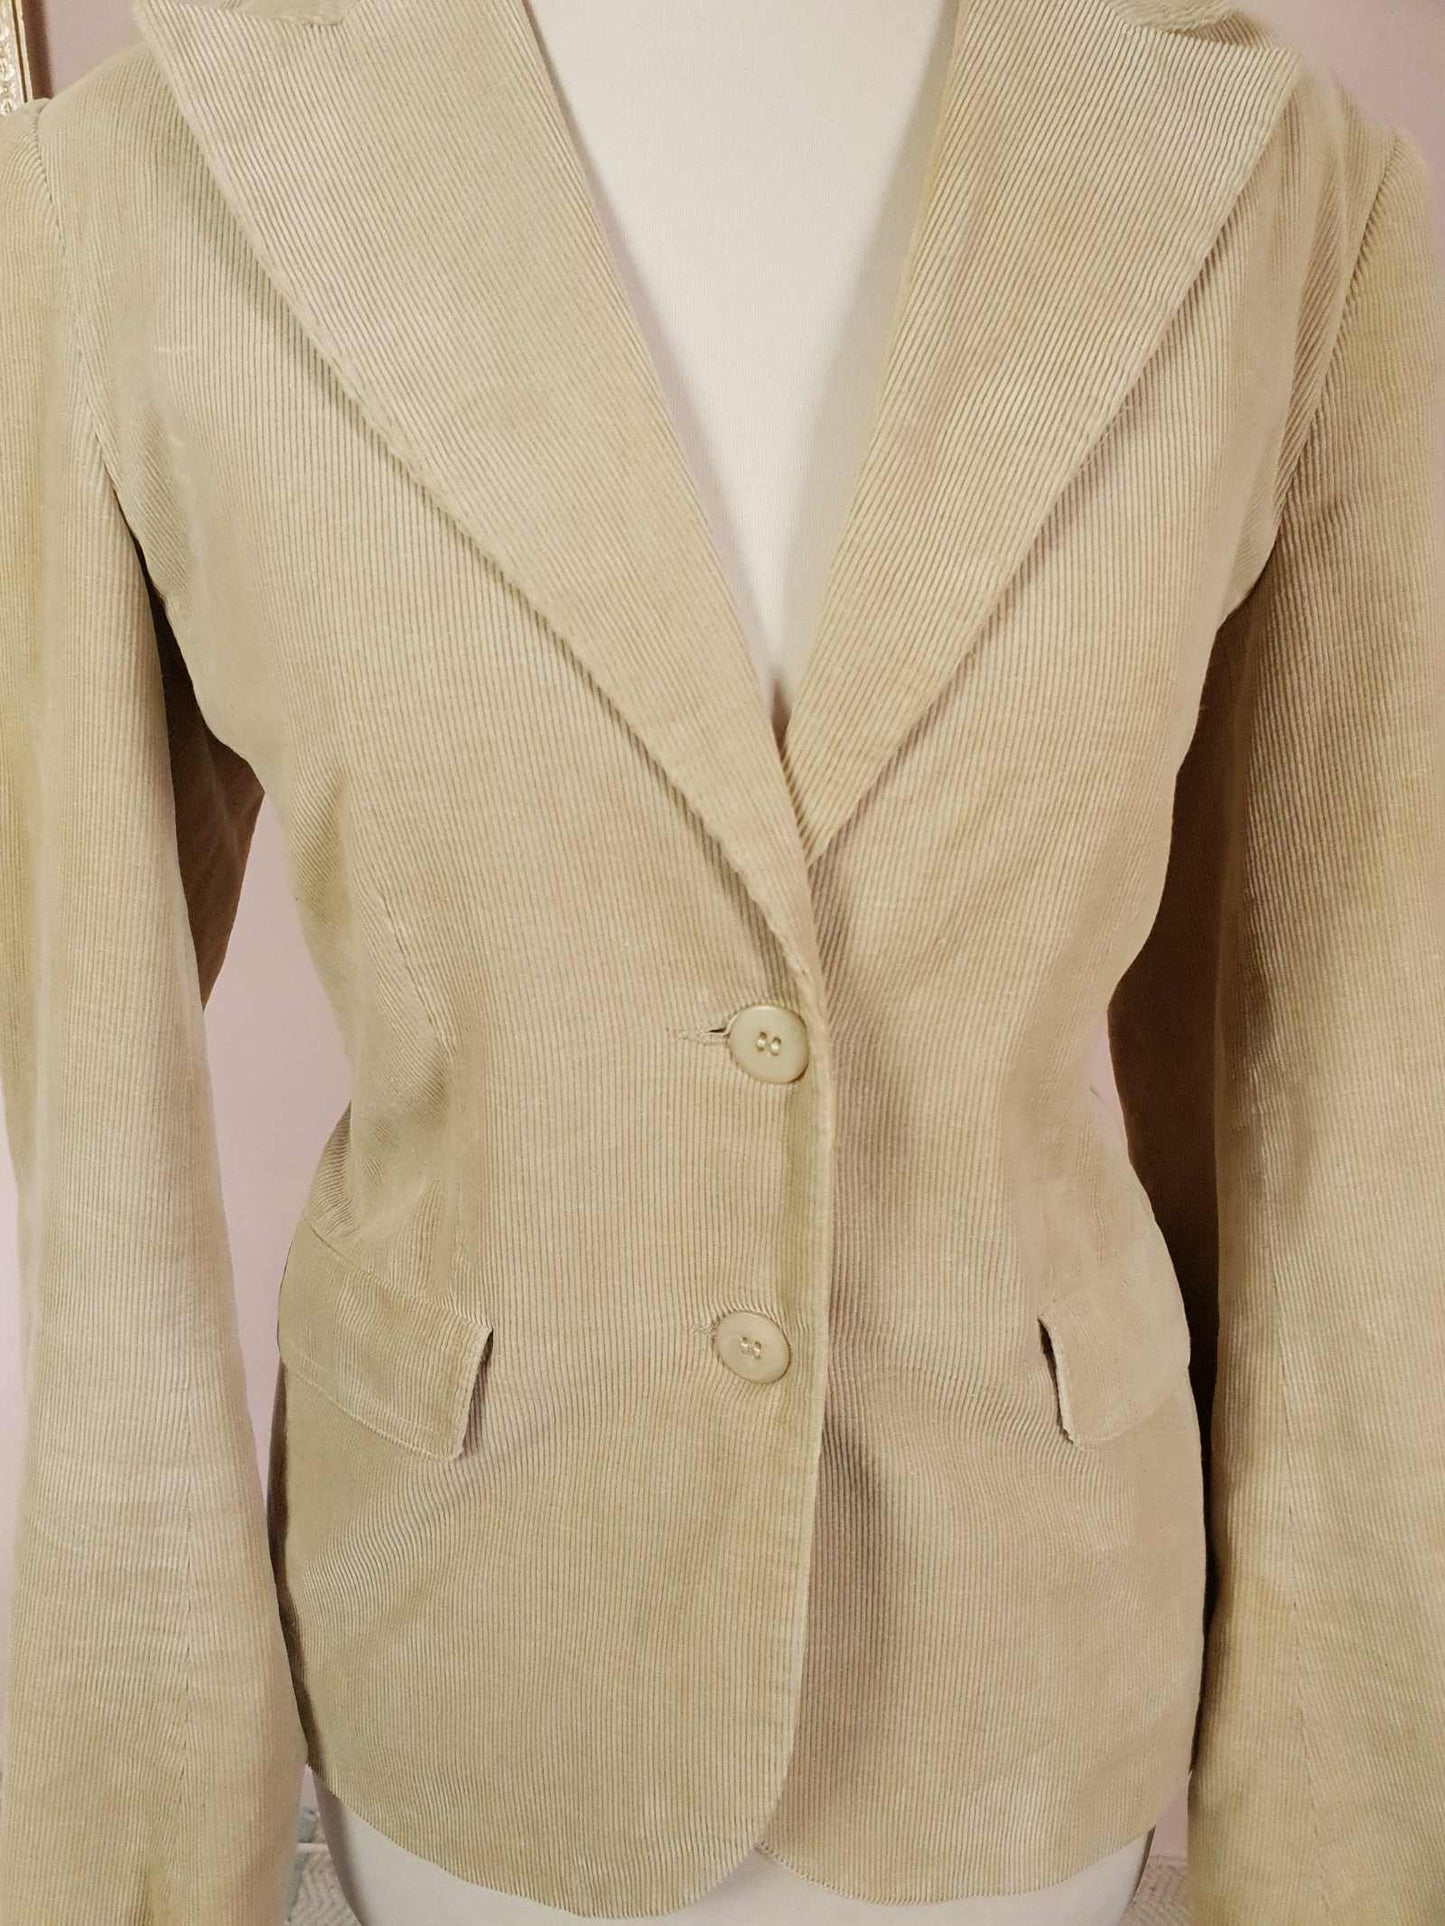 Vintage 90s Tan Corduroy Ladies Jacket Blazer Retro Cord Size 12/14 Women's